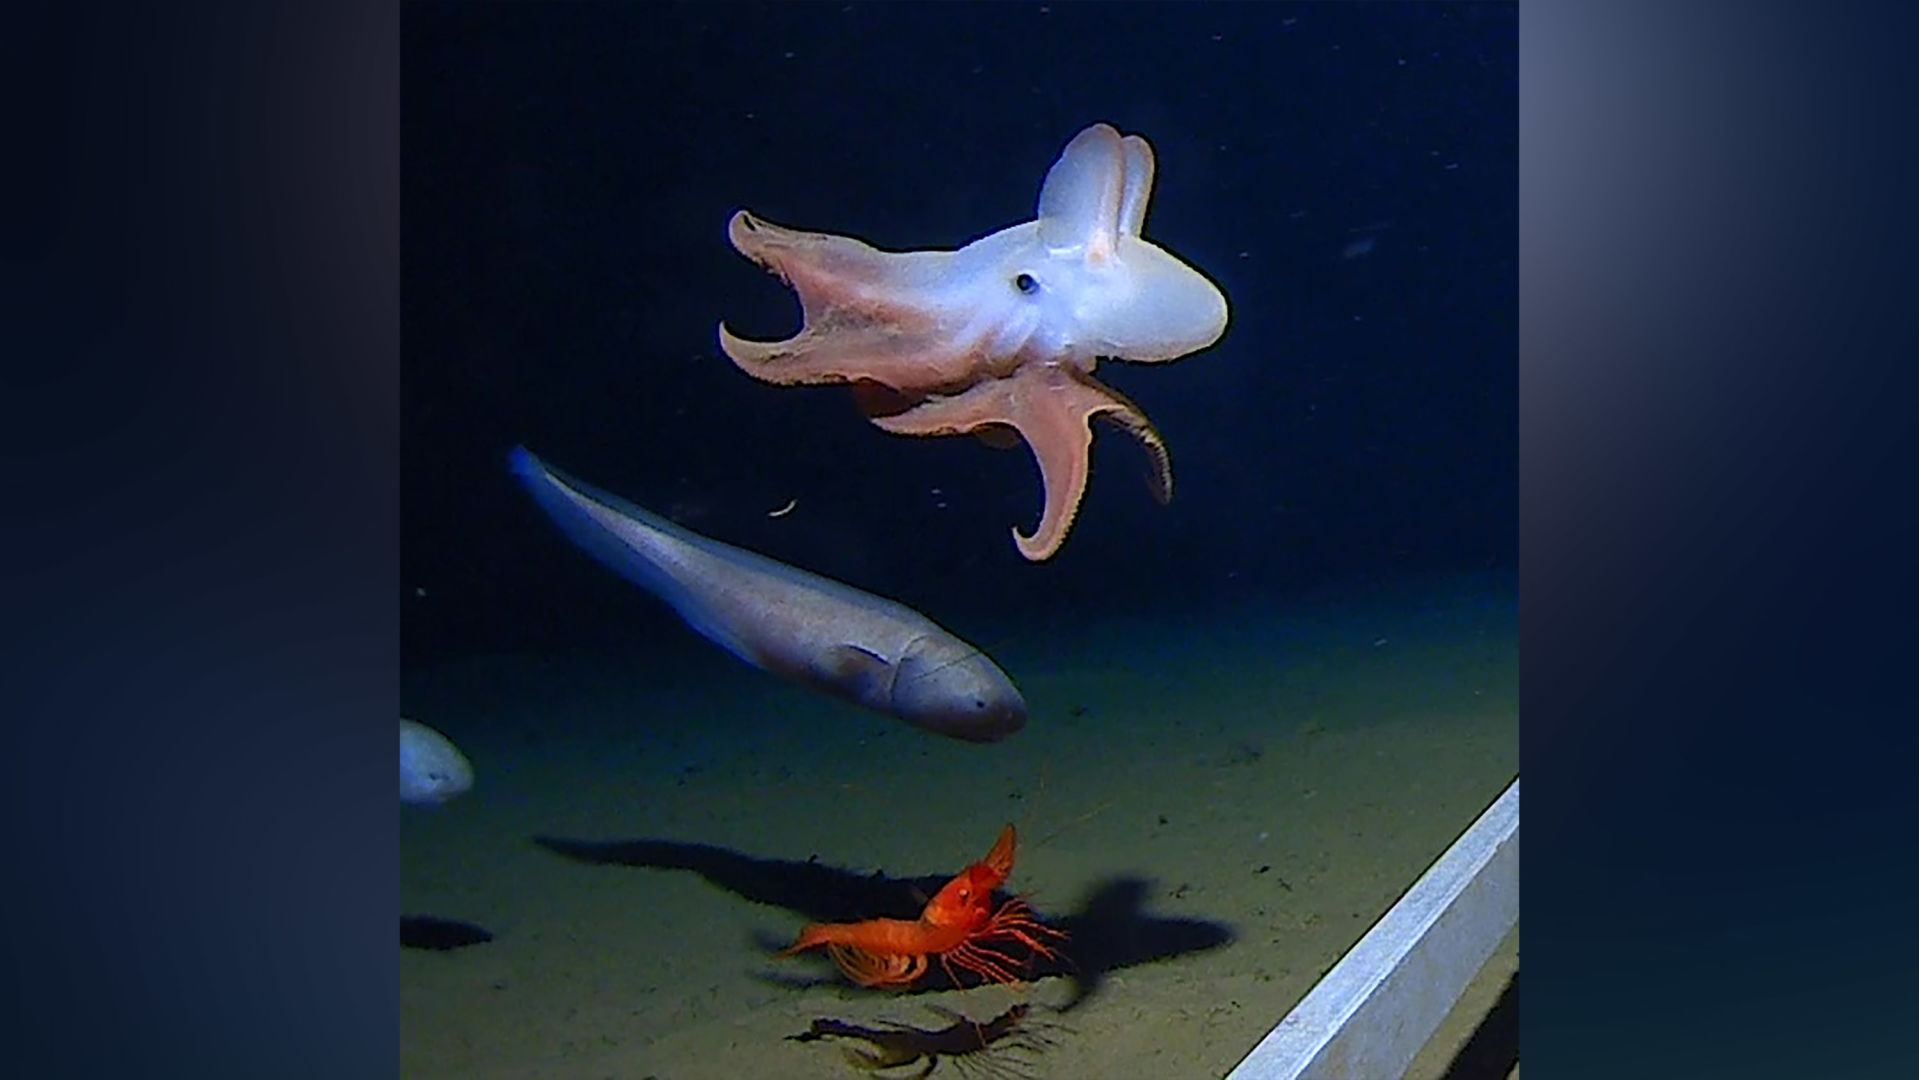 World's deepest octopus